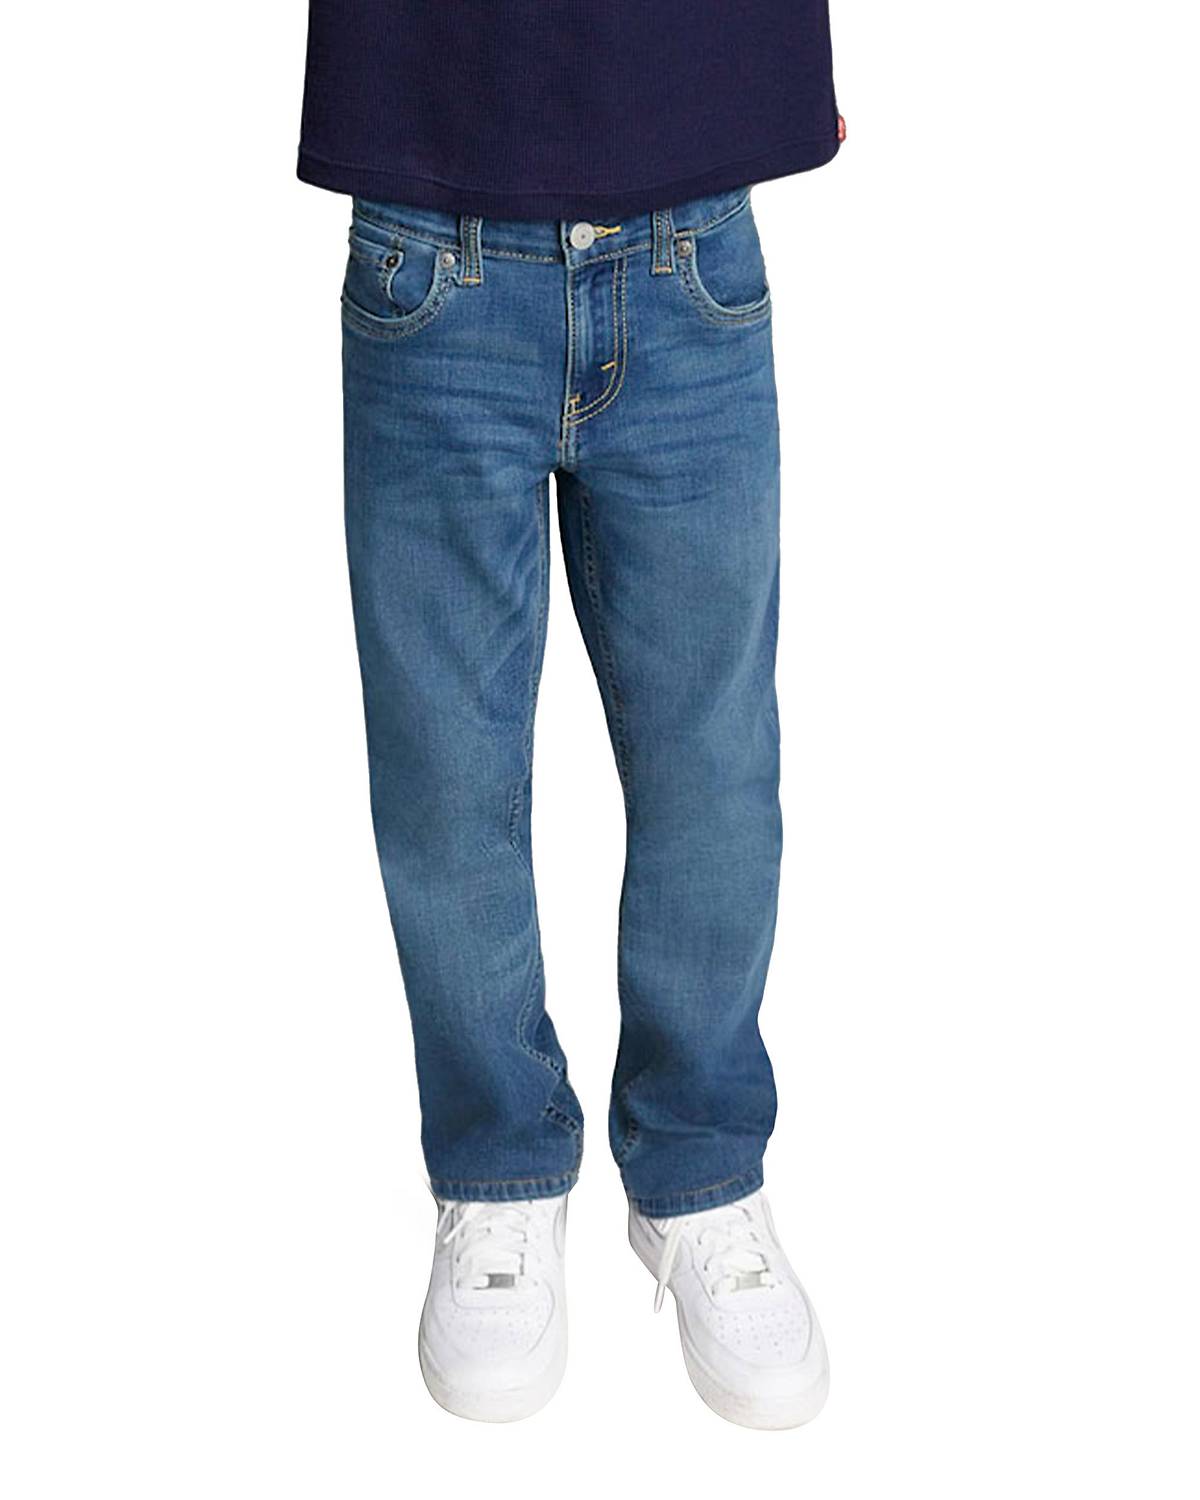 Boy wearing 501® Jeans